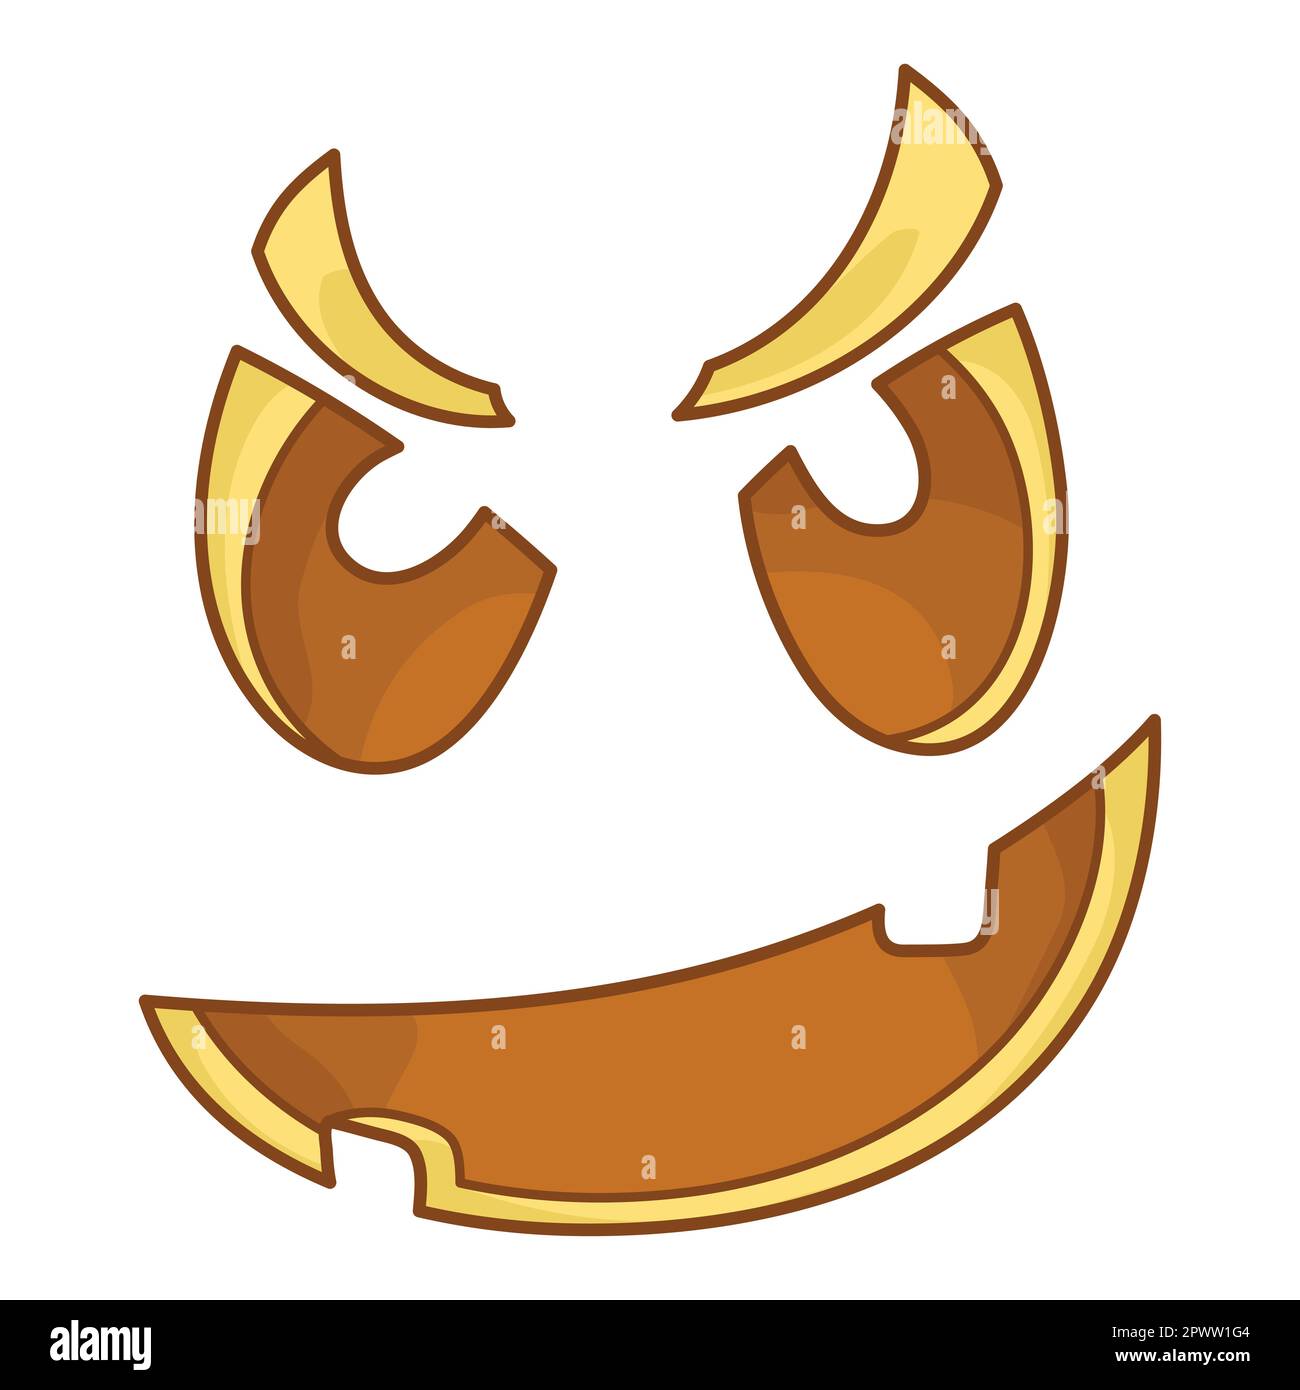 Ein böses, unfreundliches Gesicht für Jack the Lantern. Grimace. Komischer Gesichtsausdruck. Eine fiktive Halloween-Cartoon-Figur. Einfaches flaches Element für den Haube Stock Vektor